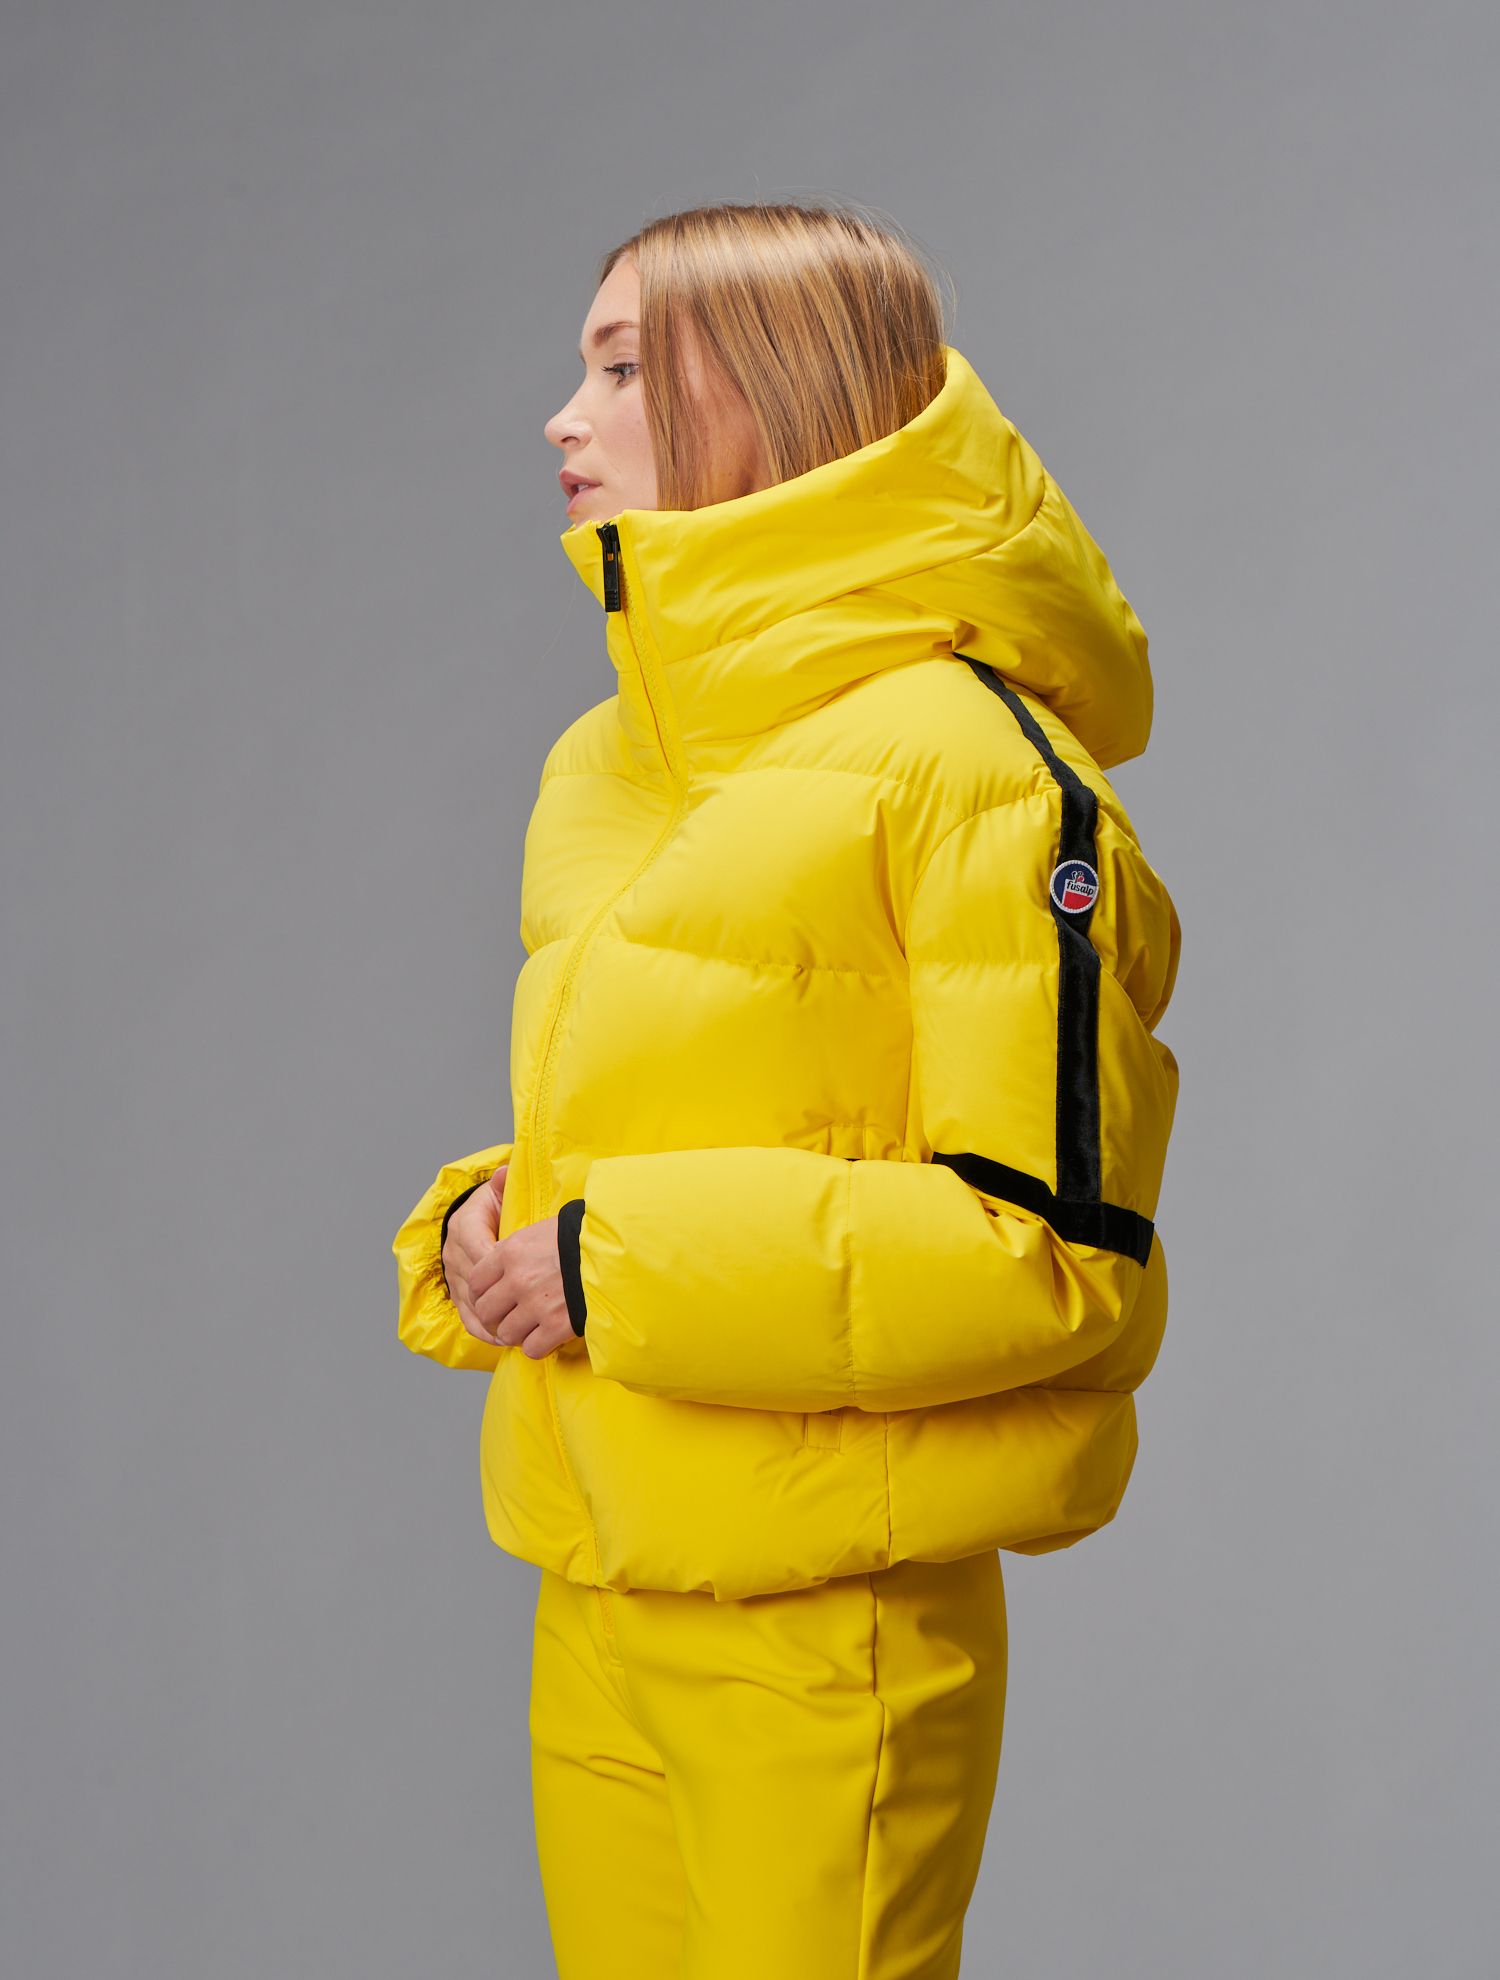 Fusalp - Barsy jacket: short oversized ski jacket with adjustable hood